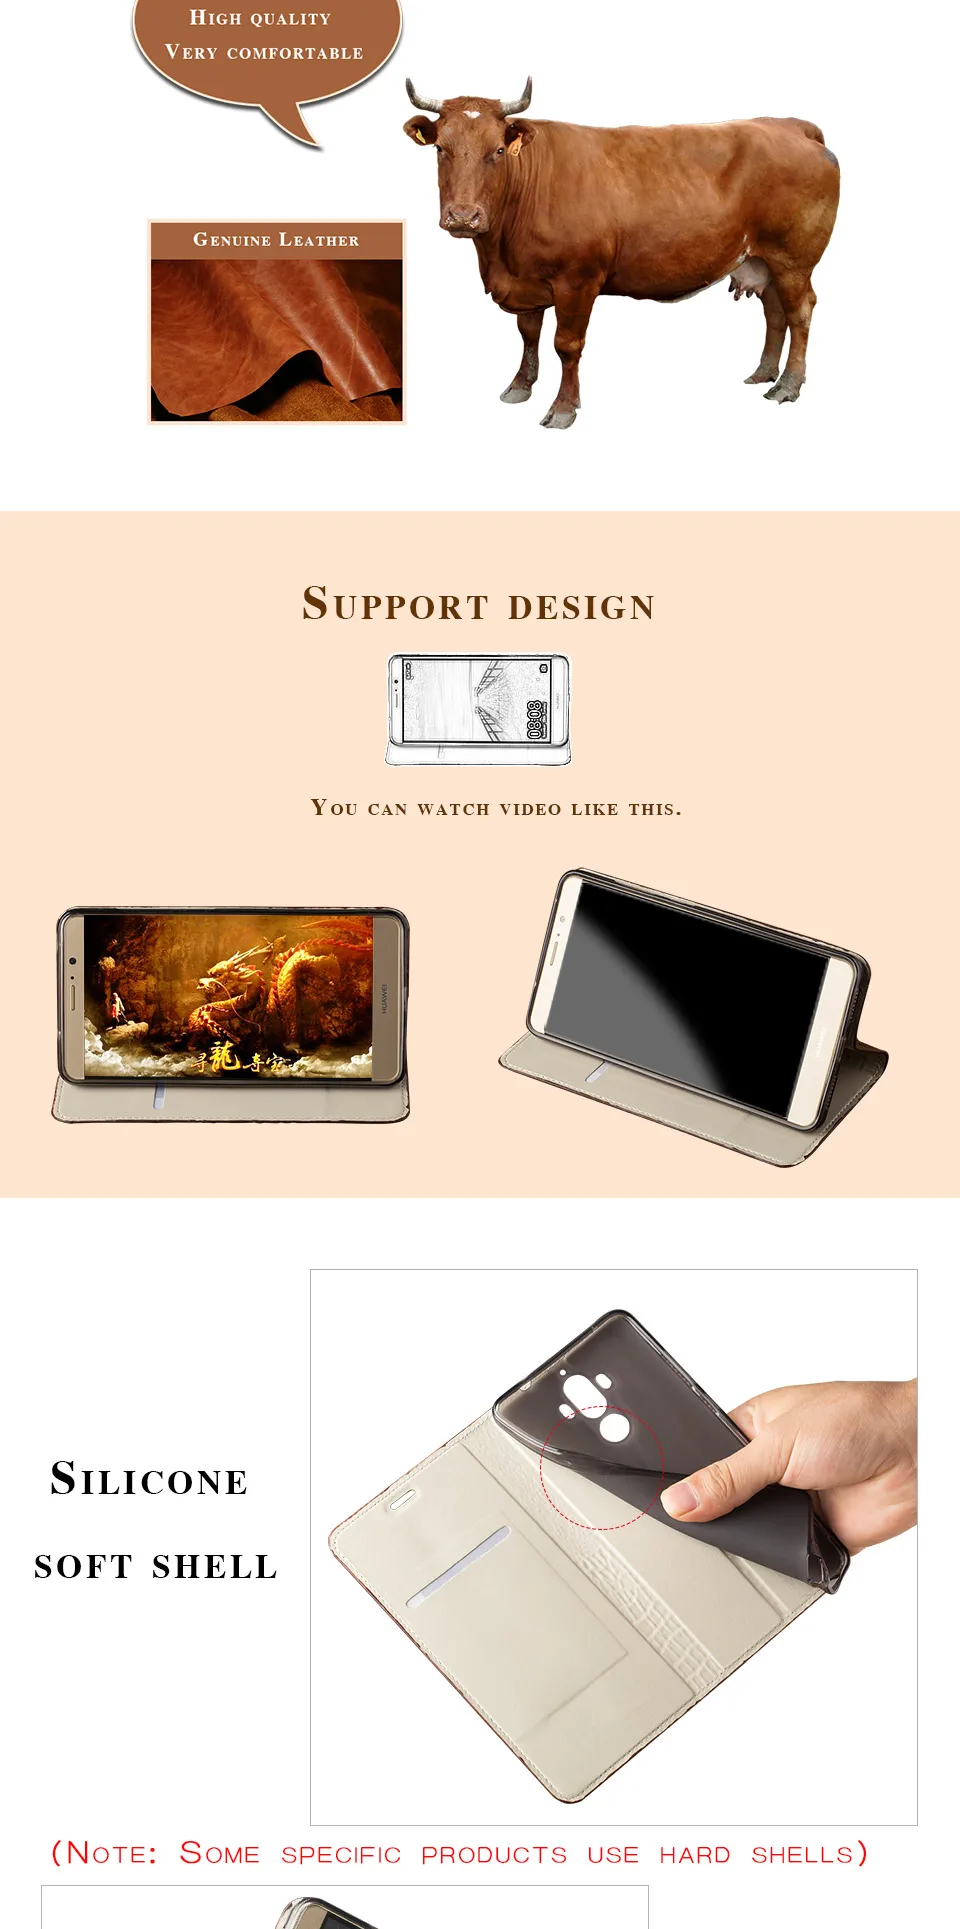 Клык дракона флип-чехол для телефона для Xiaomi Pocophone F1 чехол для A1 A2 Lite Max 2 3 Mix2s для Redmi Note 5 чехол из натуральной кожи